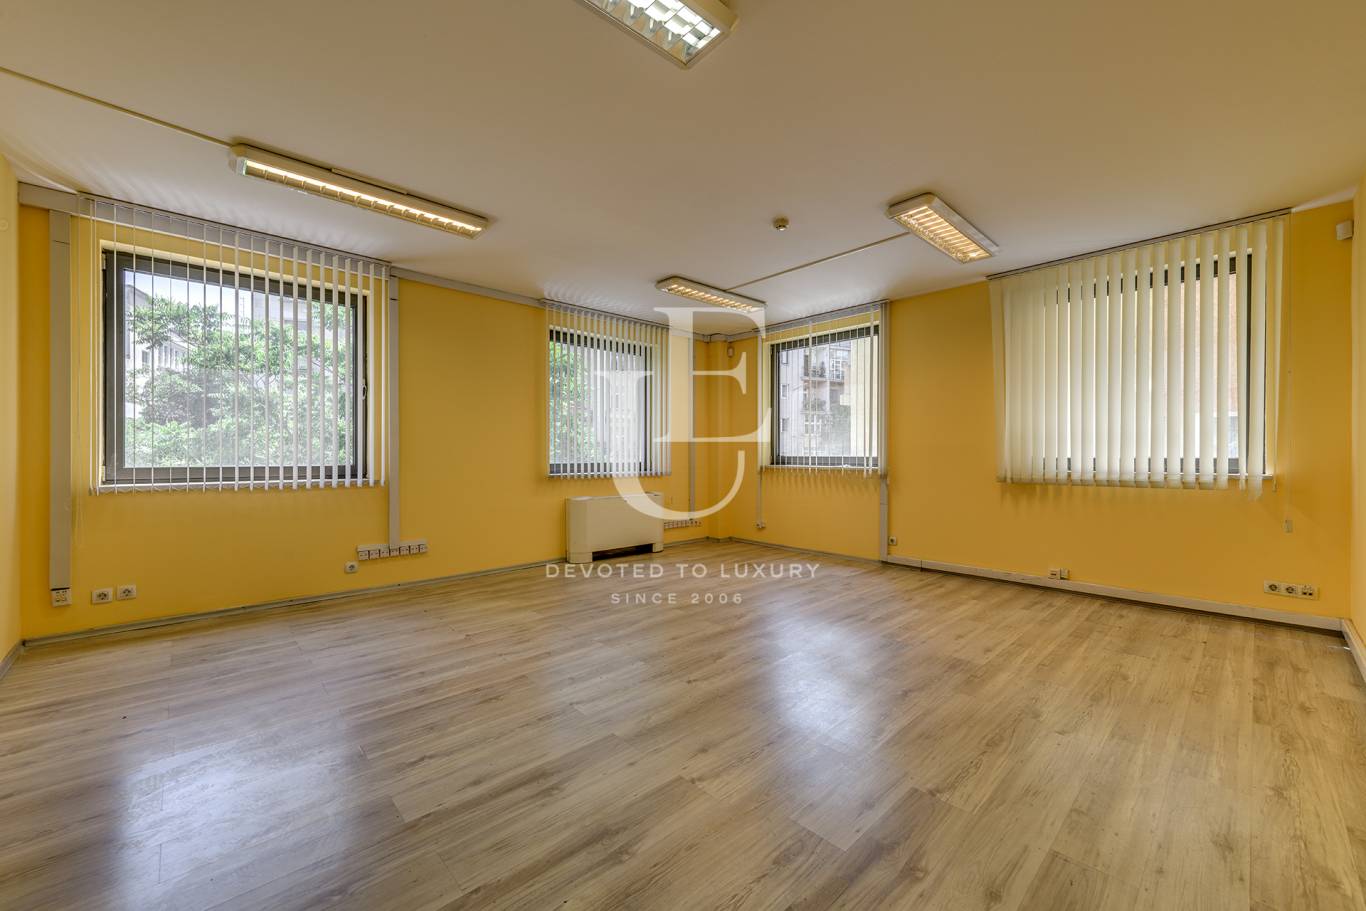 Офис под наем в София, Център - код на имота: K17623 - image 5